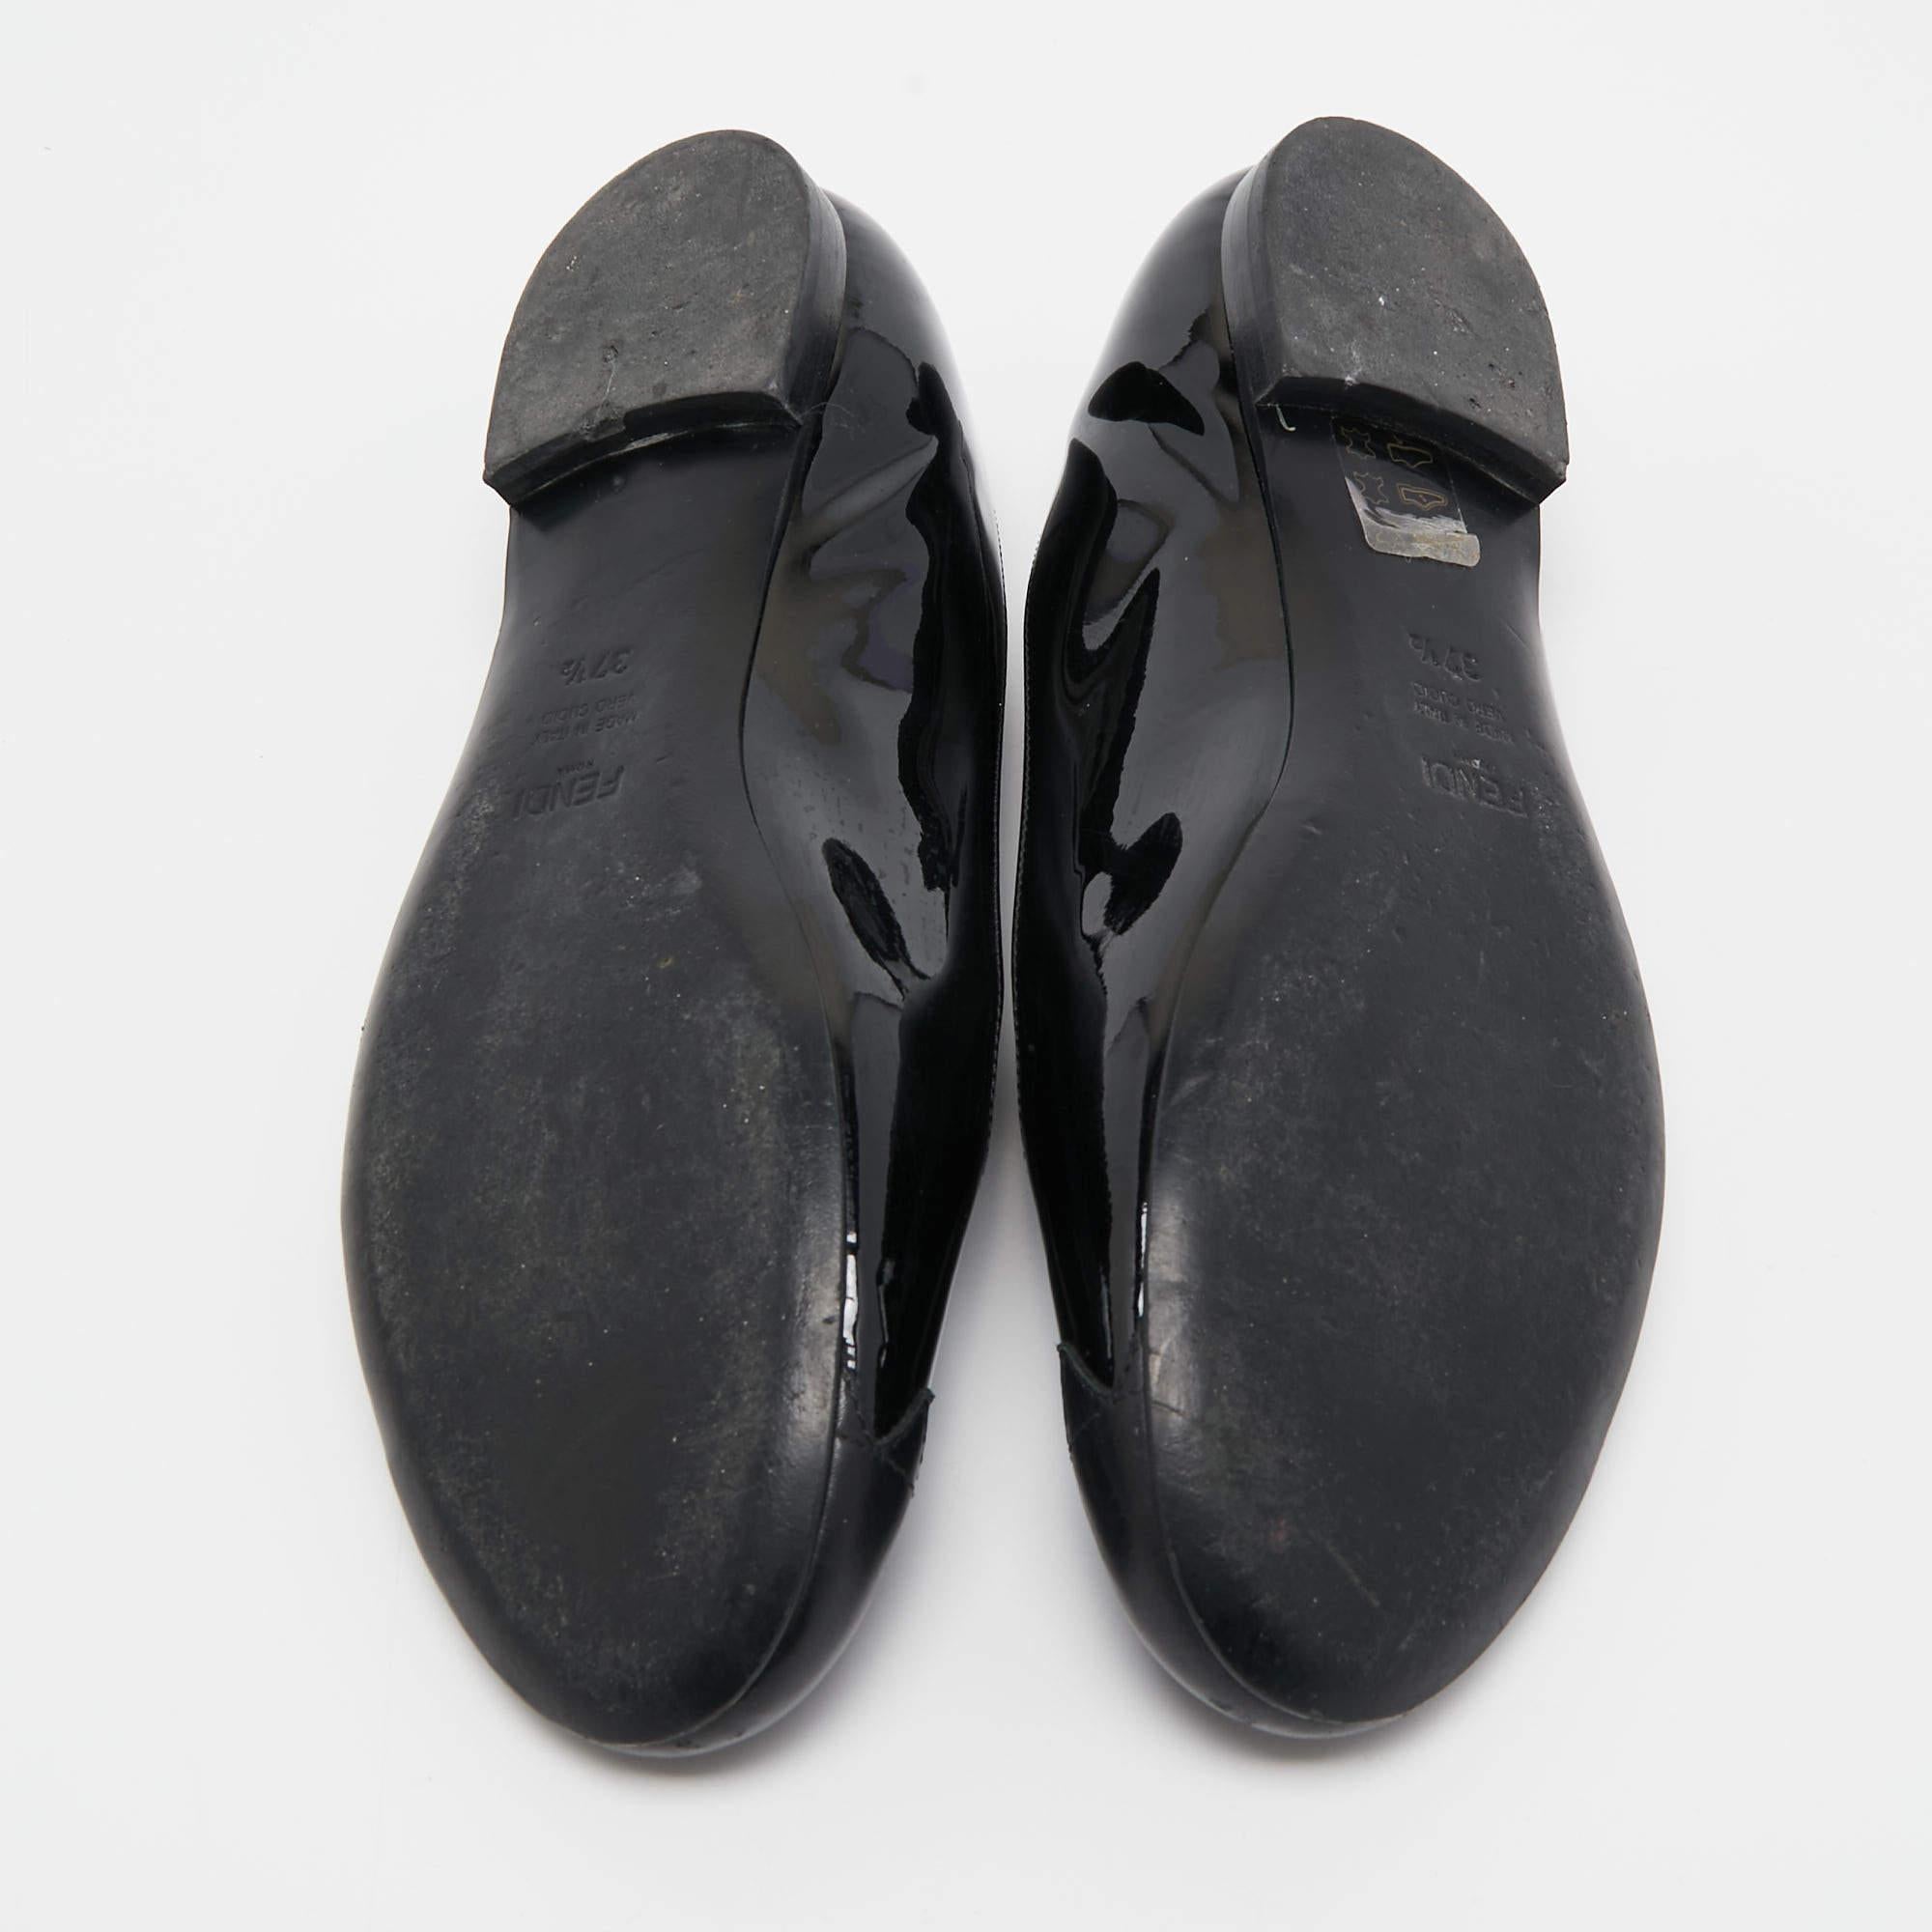 Fendi Black Patent Leather Cap Toe Ballet Flats Size 37.5 For Sale 2